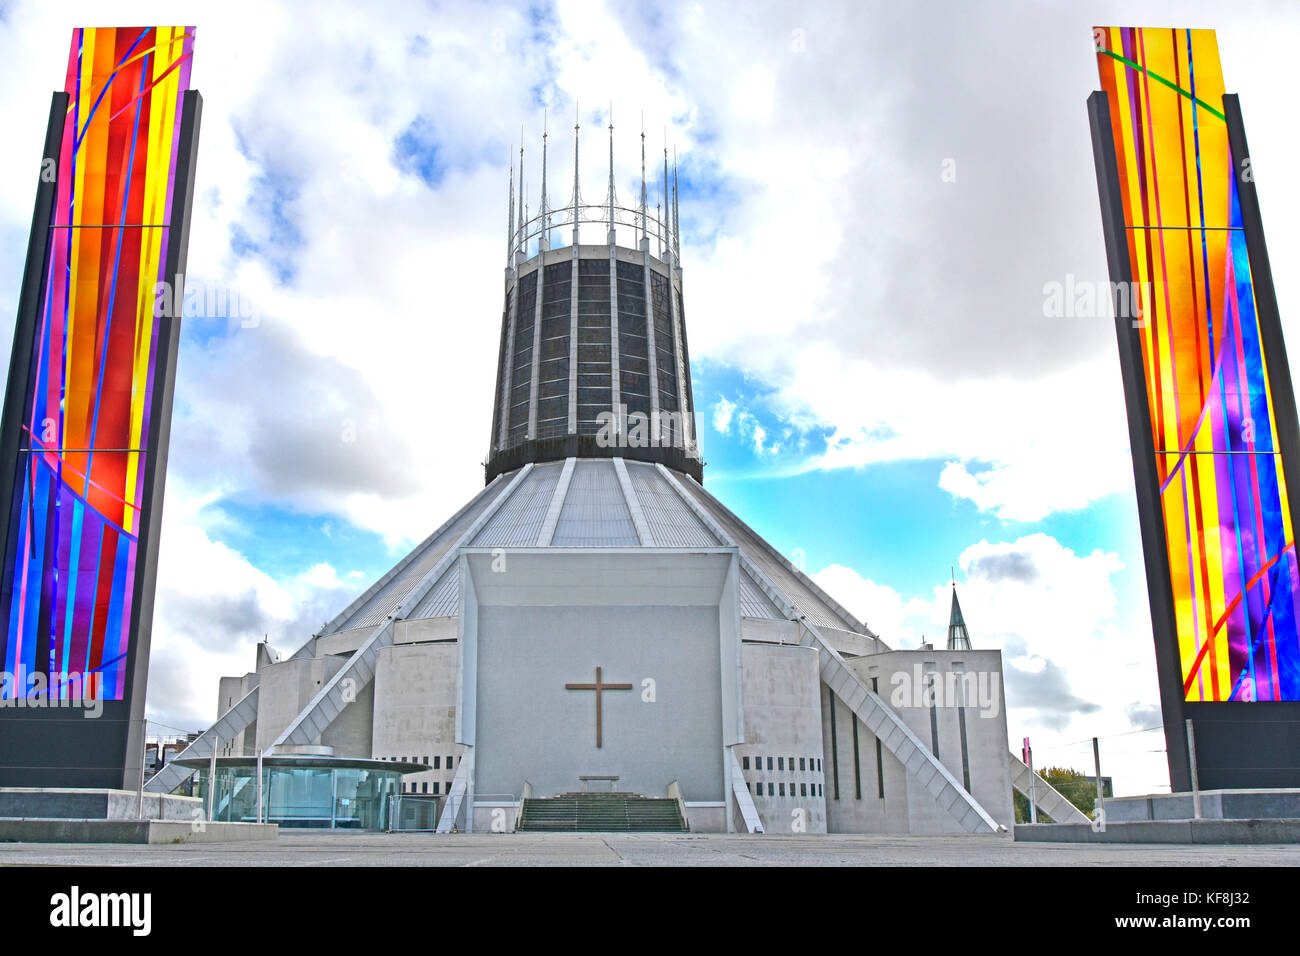 Liverpool Metropolitan Cathedral Moderne Architektur und Design der katholischen Kirche außen flankiert von Buntglaspaneelen Merseyside England UK Stockfoto